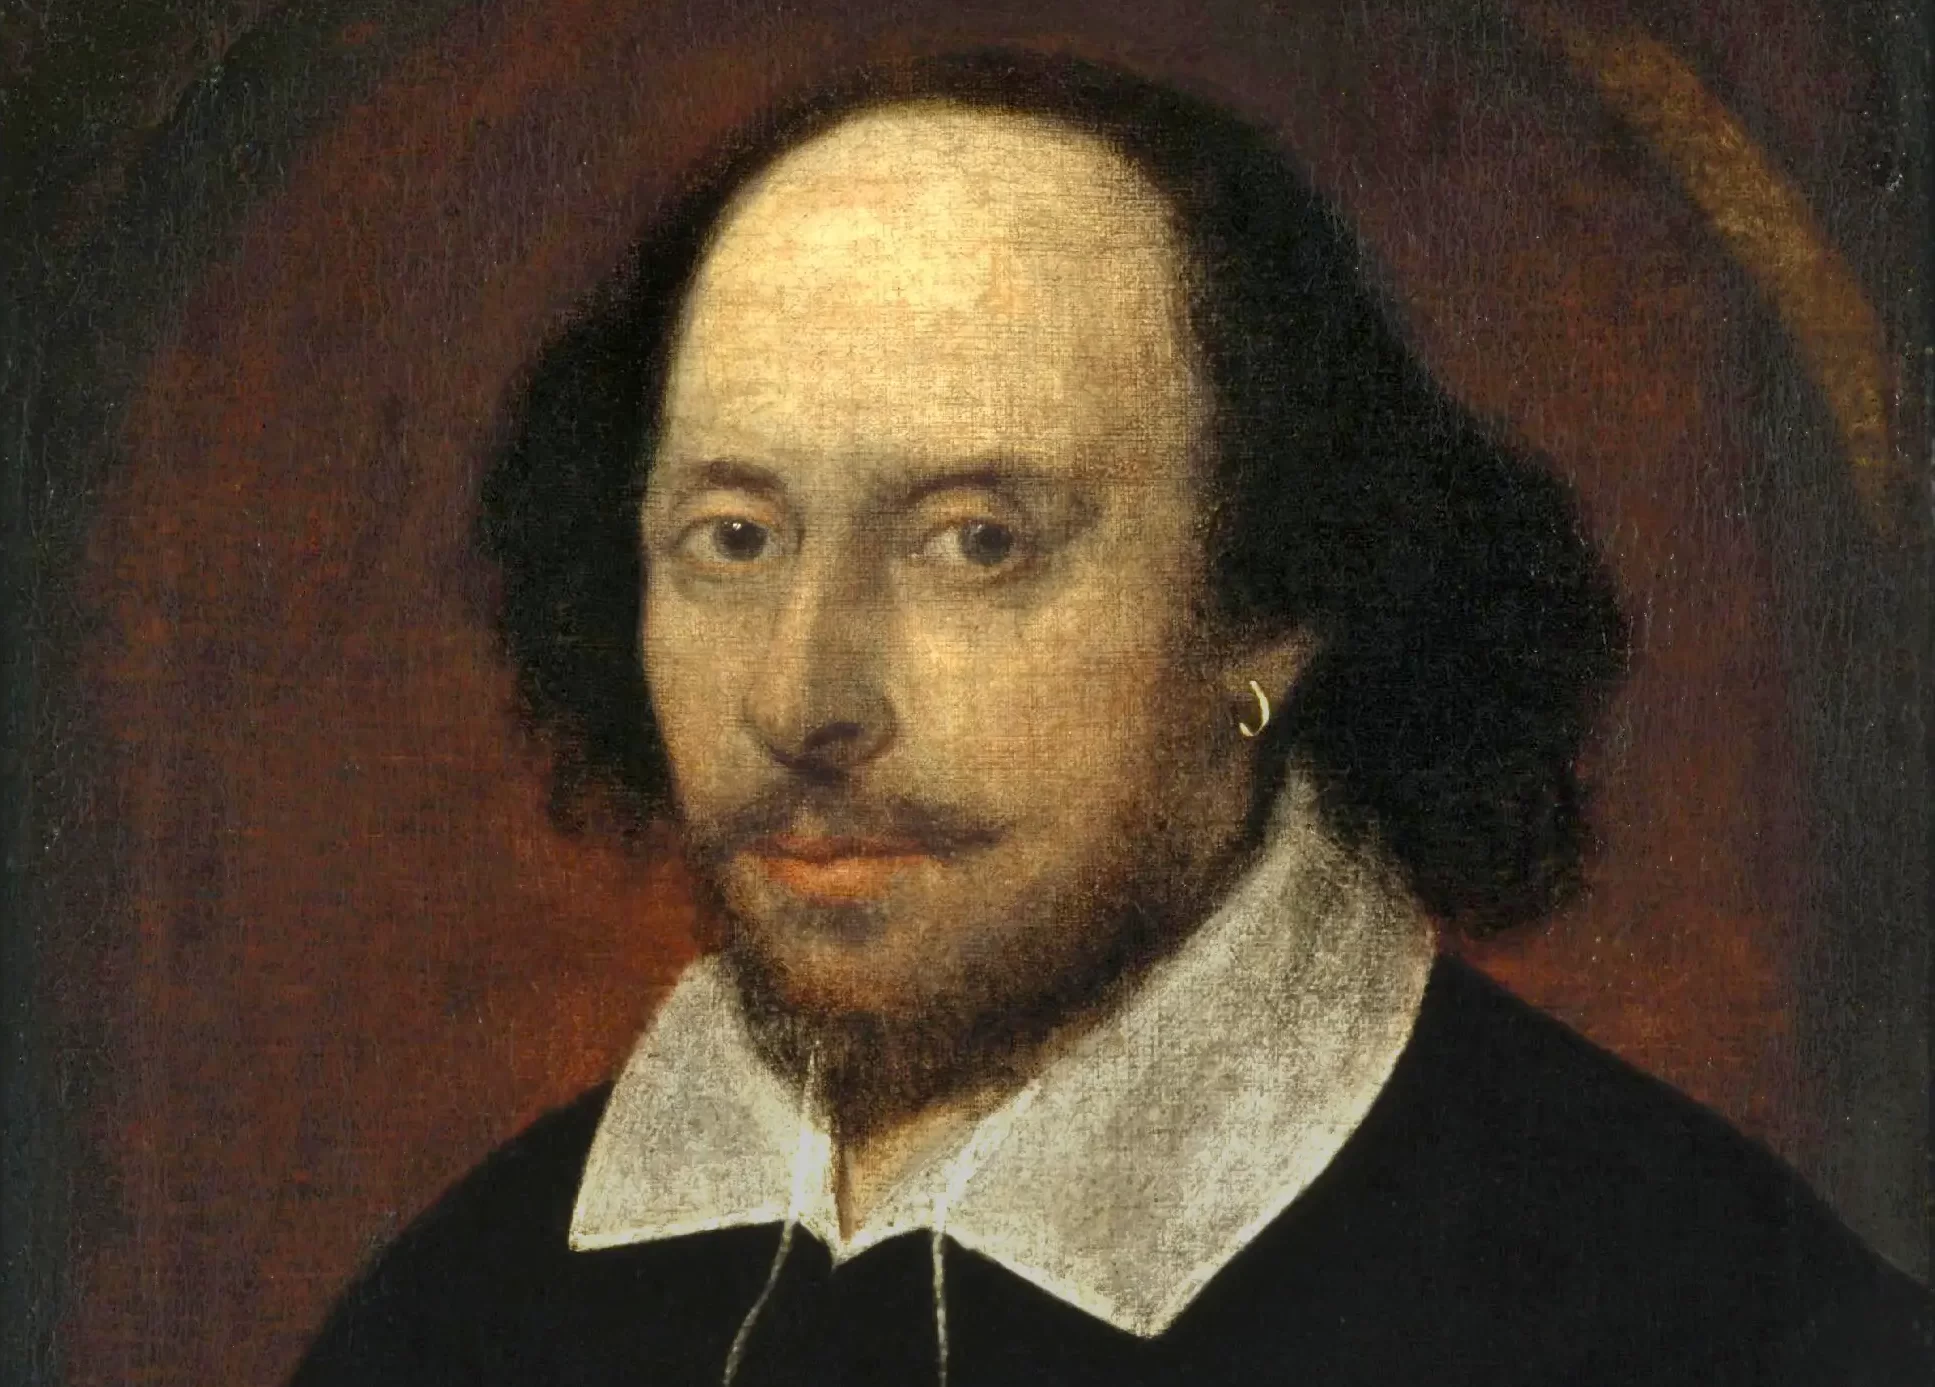 Retrato de William Shakespeare